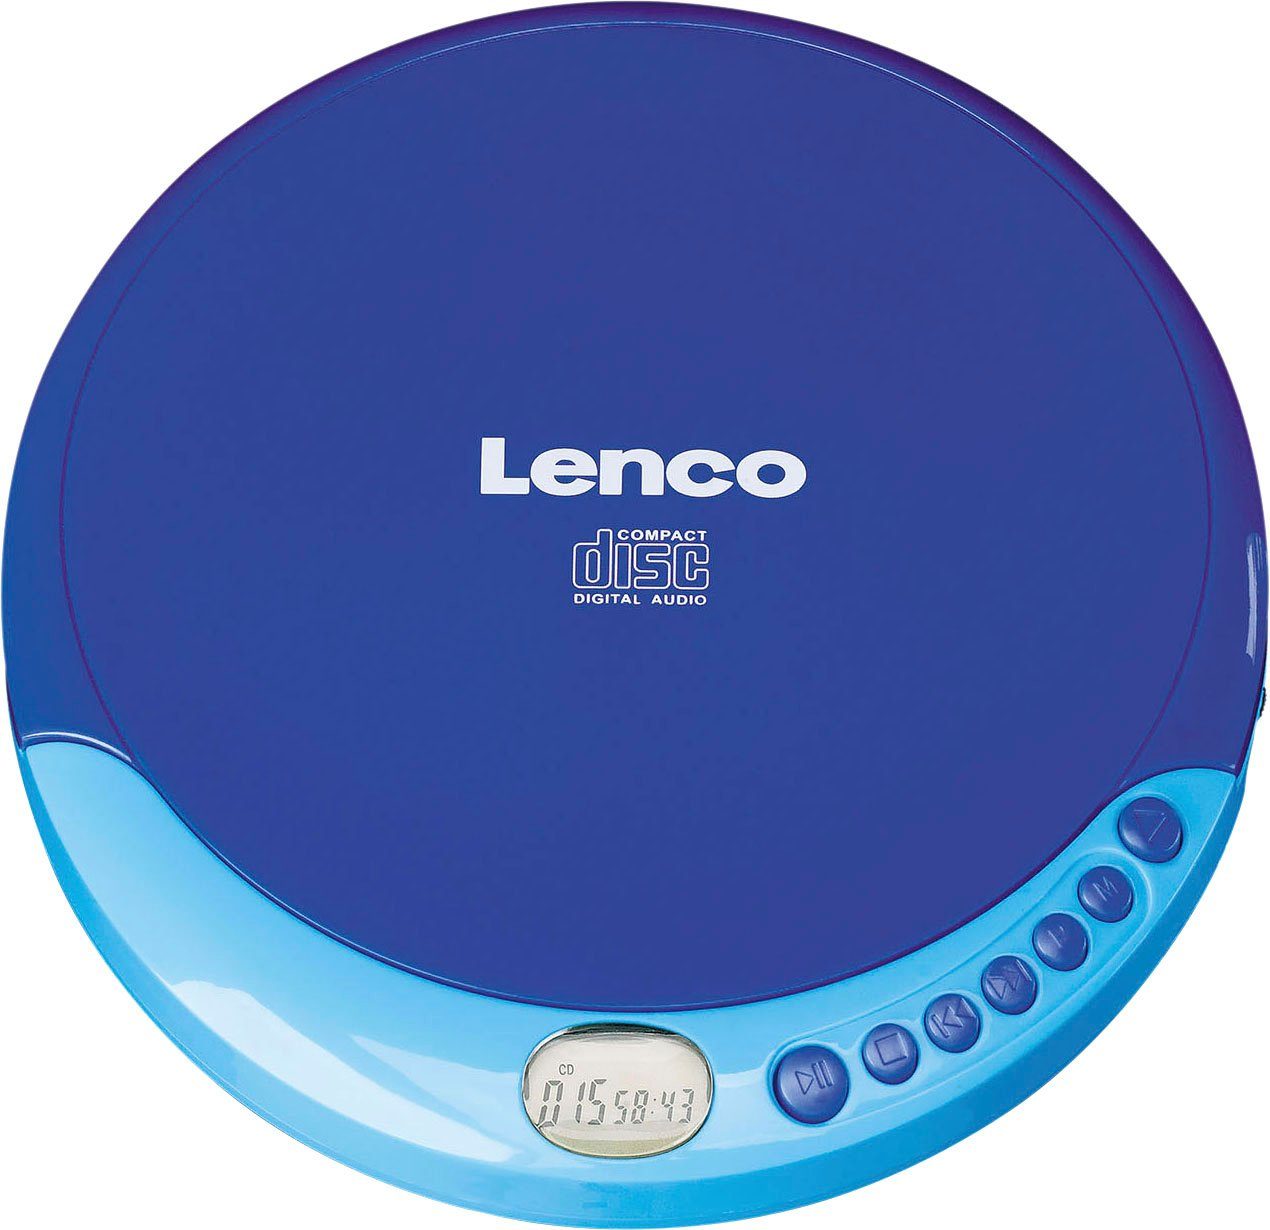 Lenco CD-011 blau CD-Player